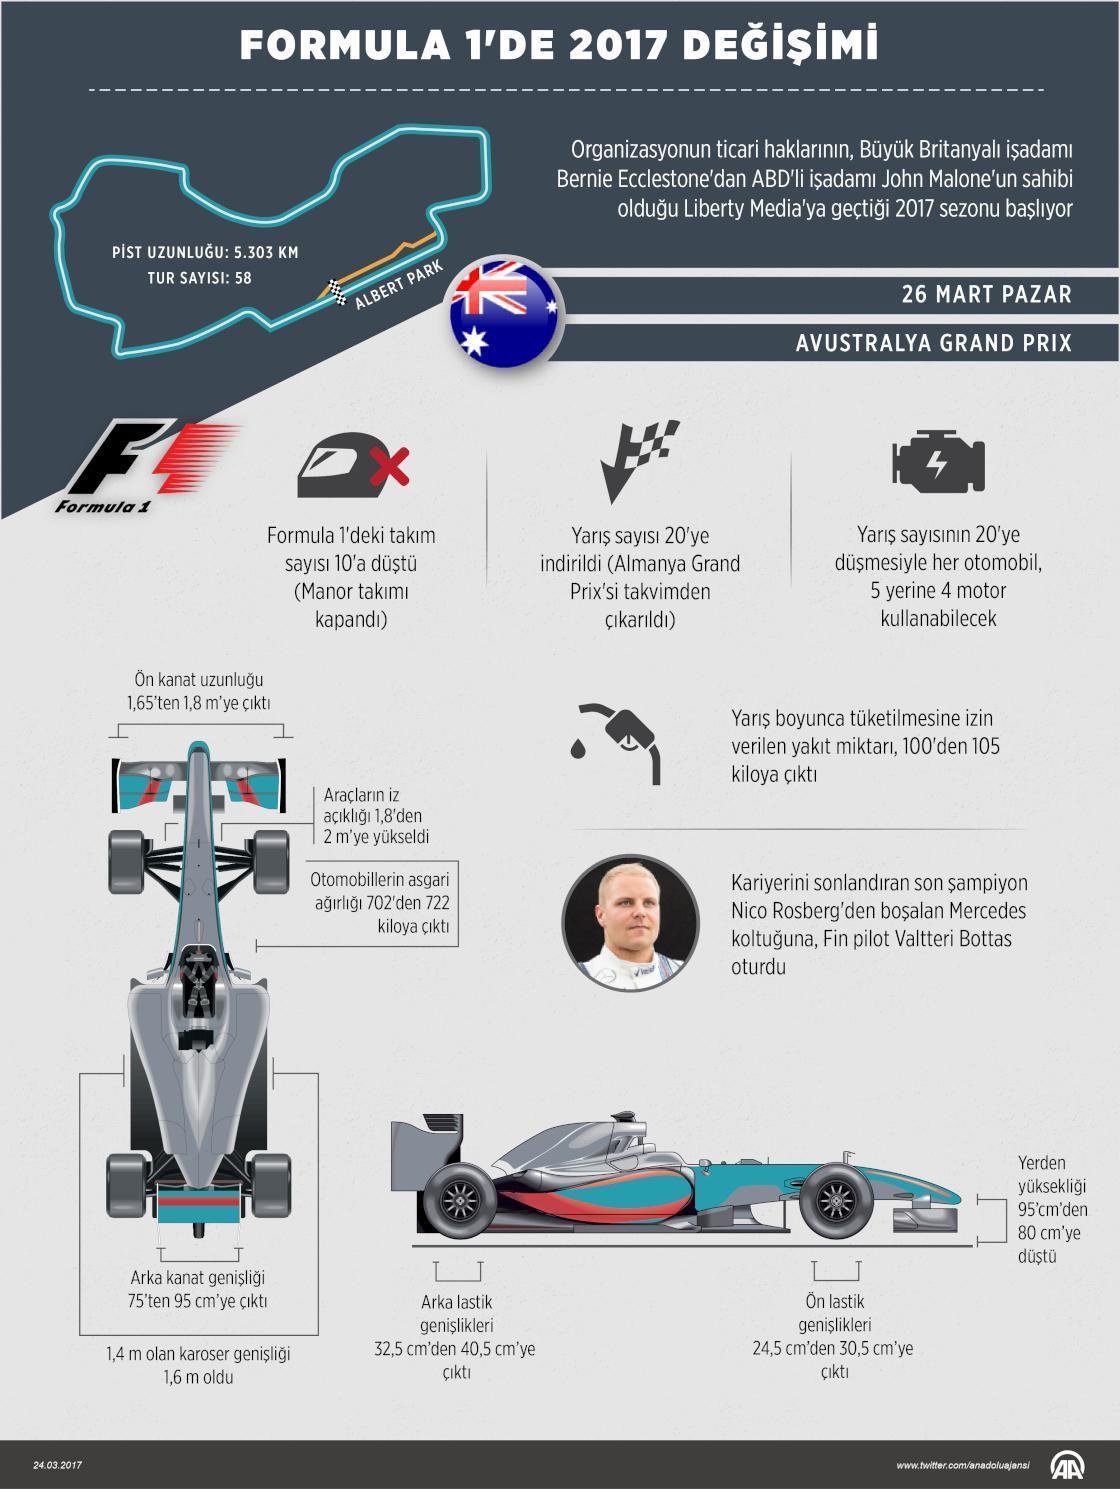 Formula 1de 2017 değişimi